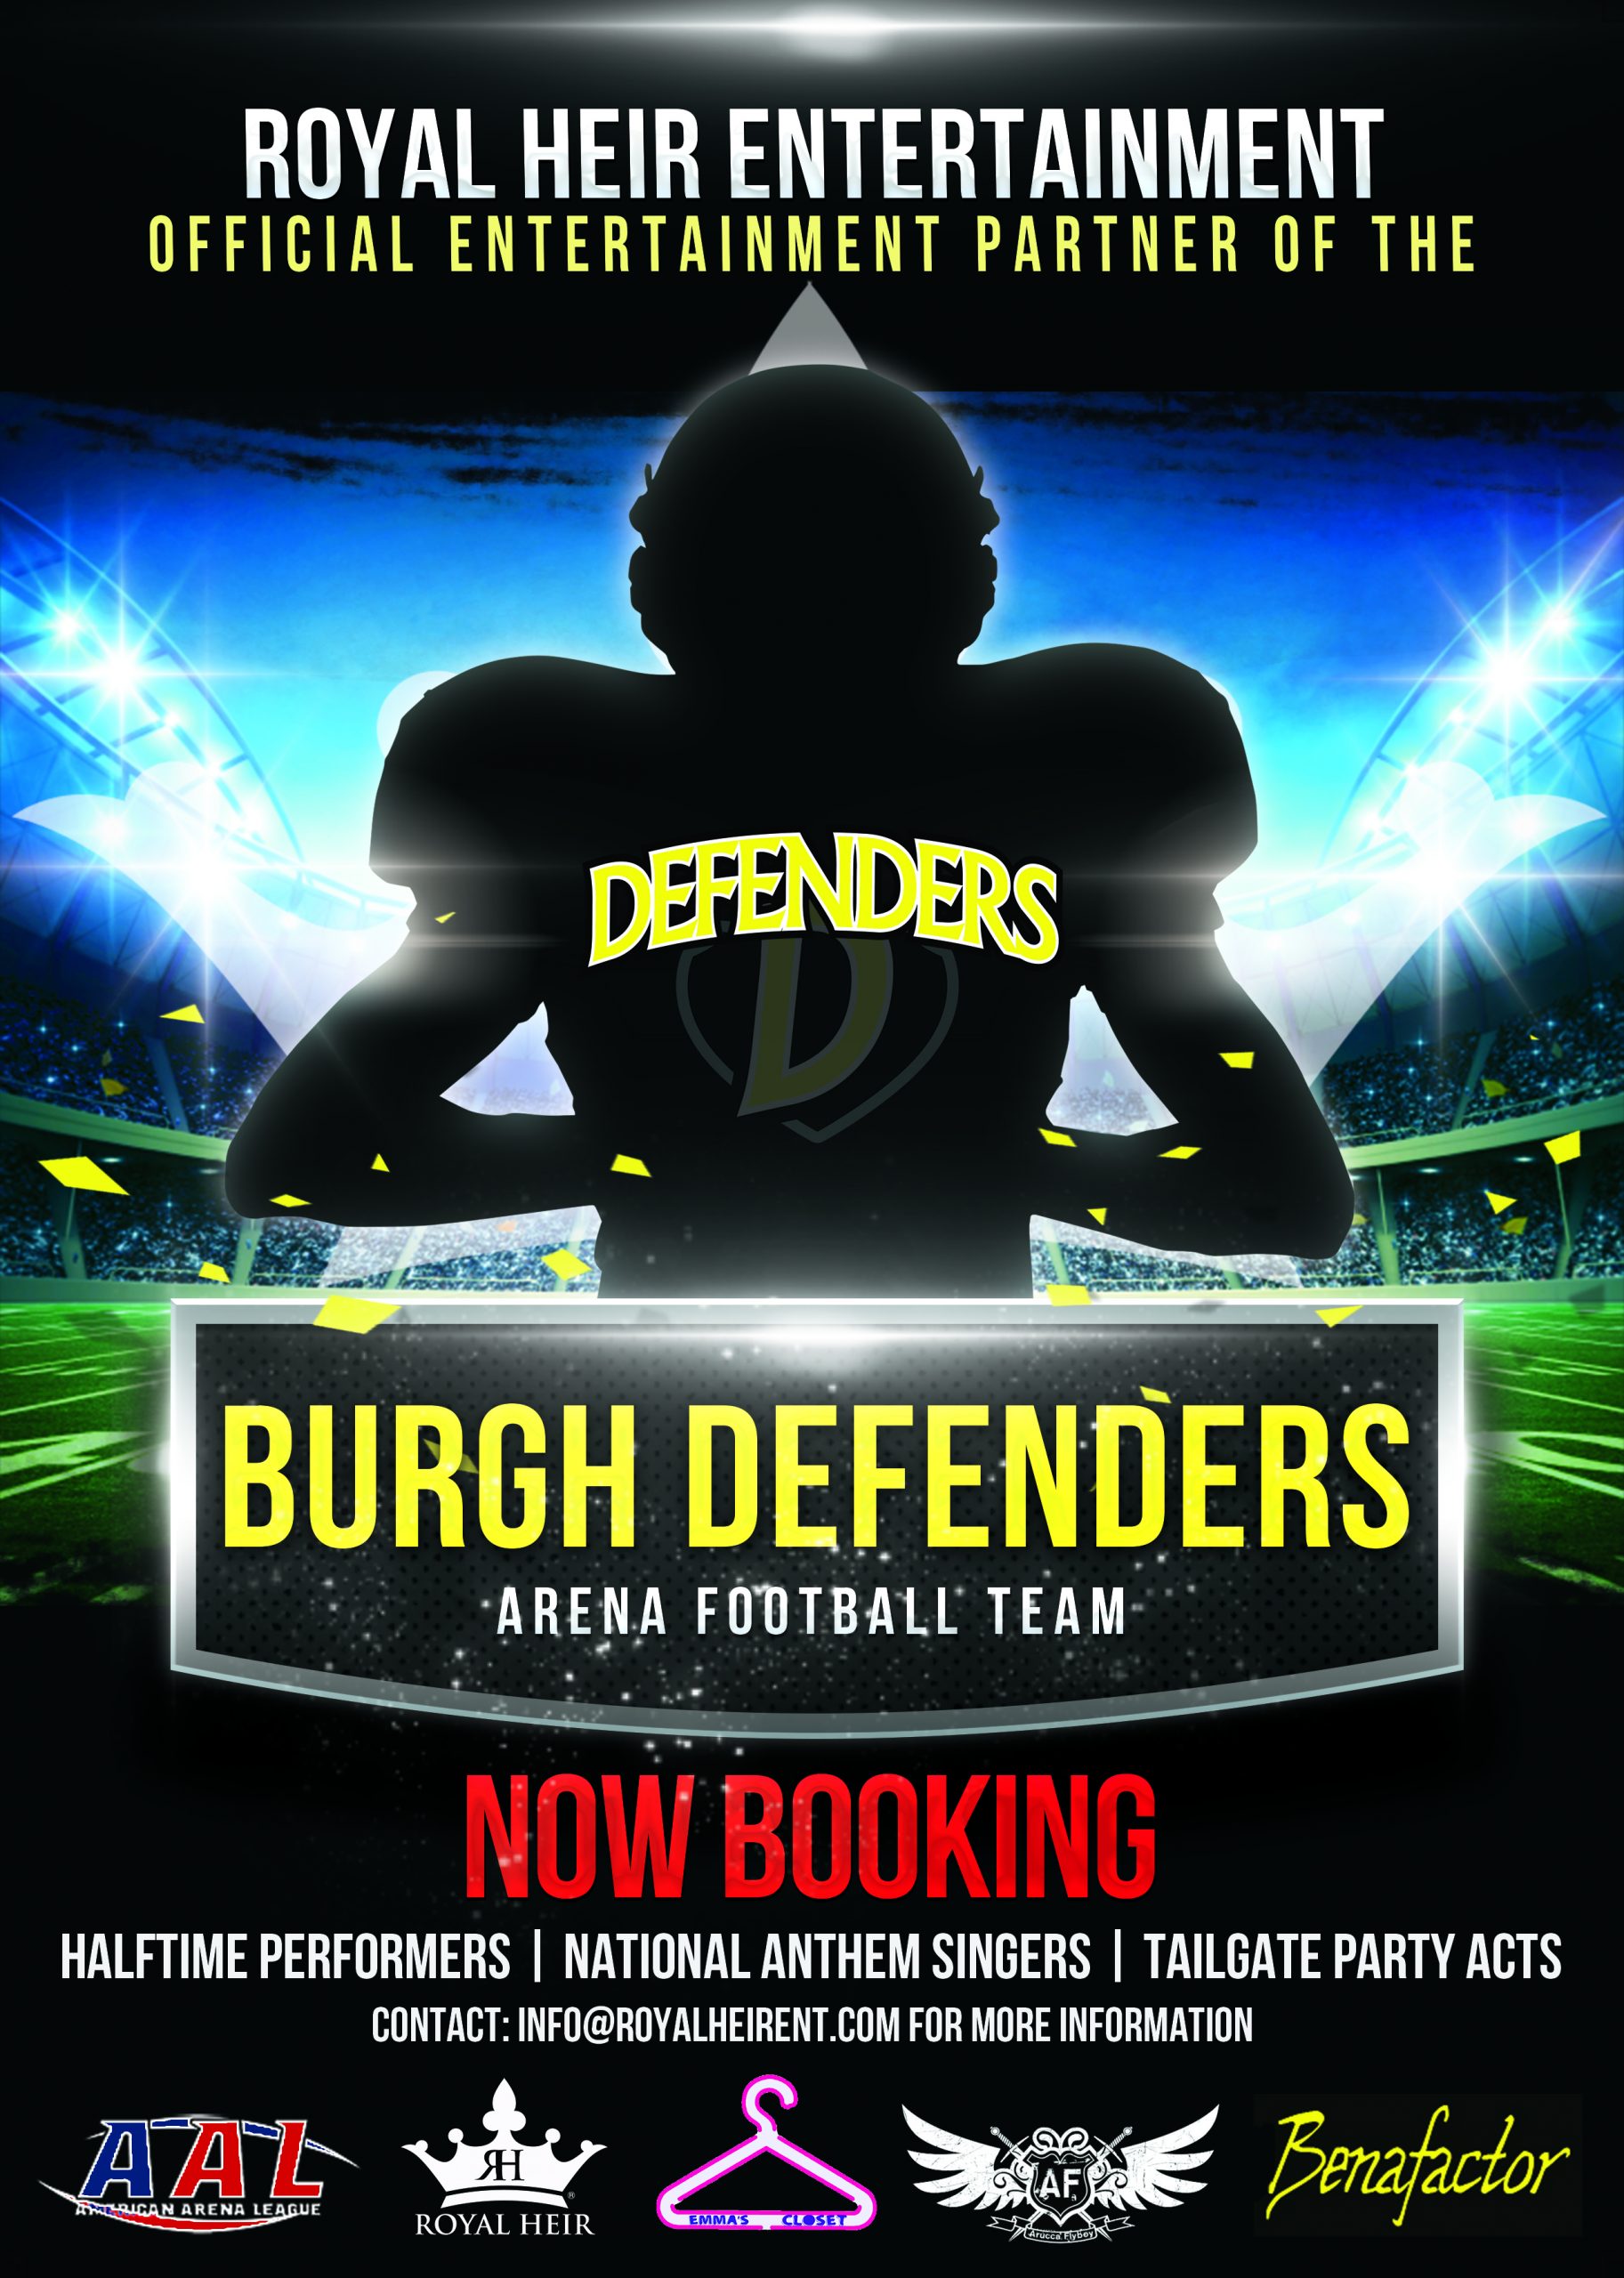 Burgh Defenders x RHE partnership